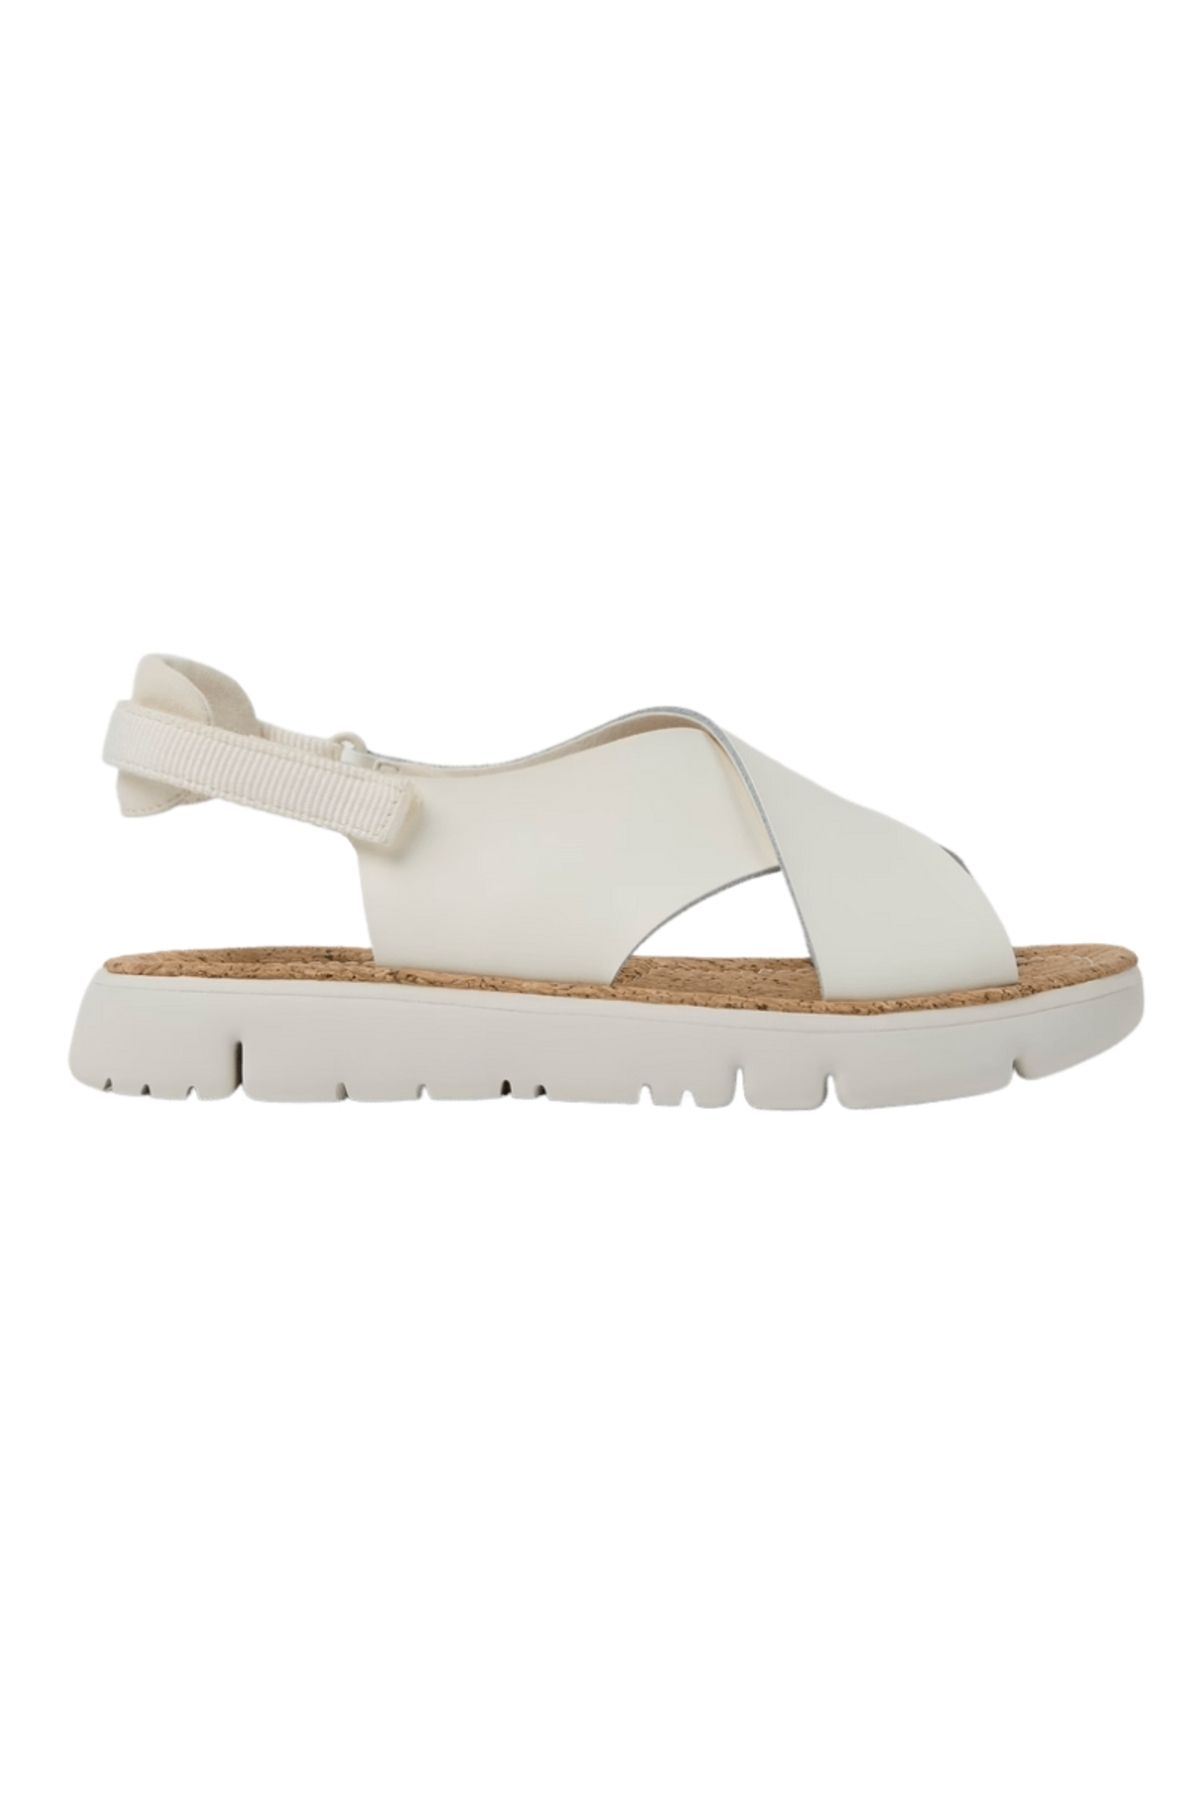 CAMPER Kadın Beyaz Casual Ayakkabı K200157-046-beyaz